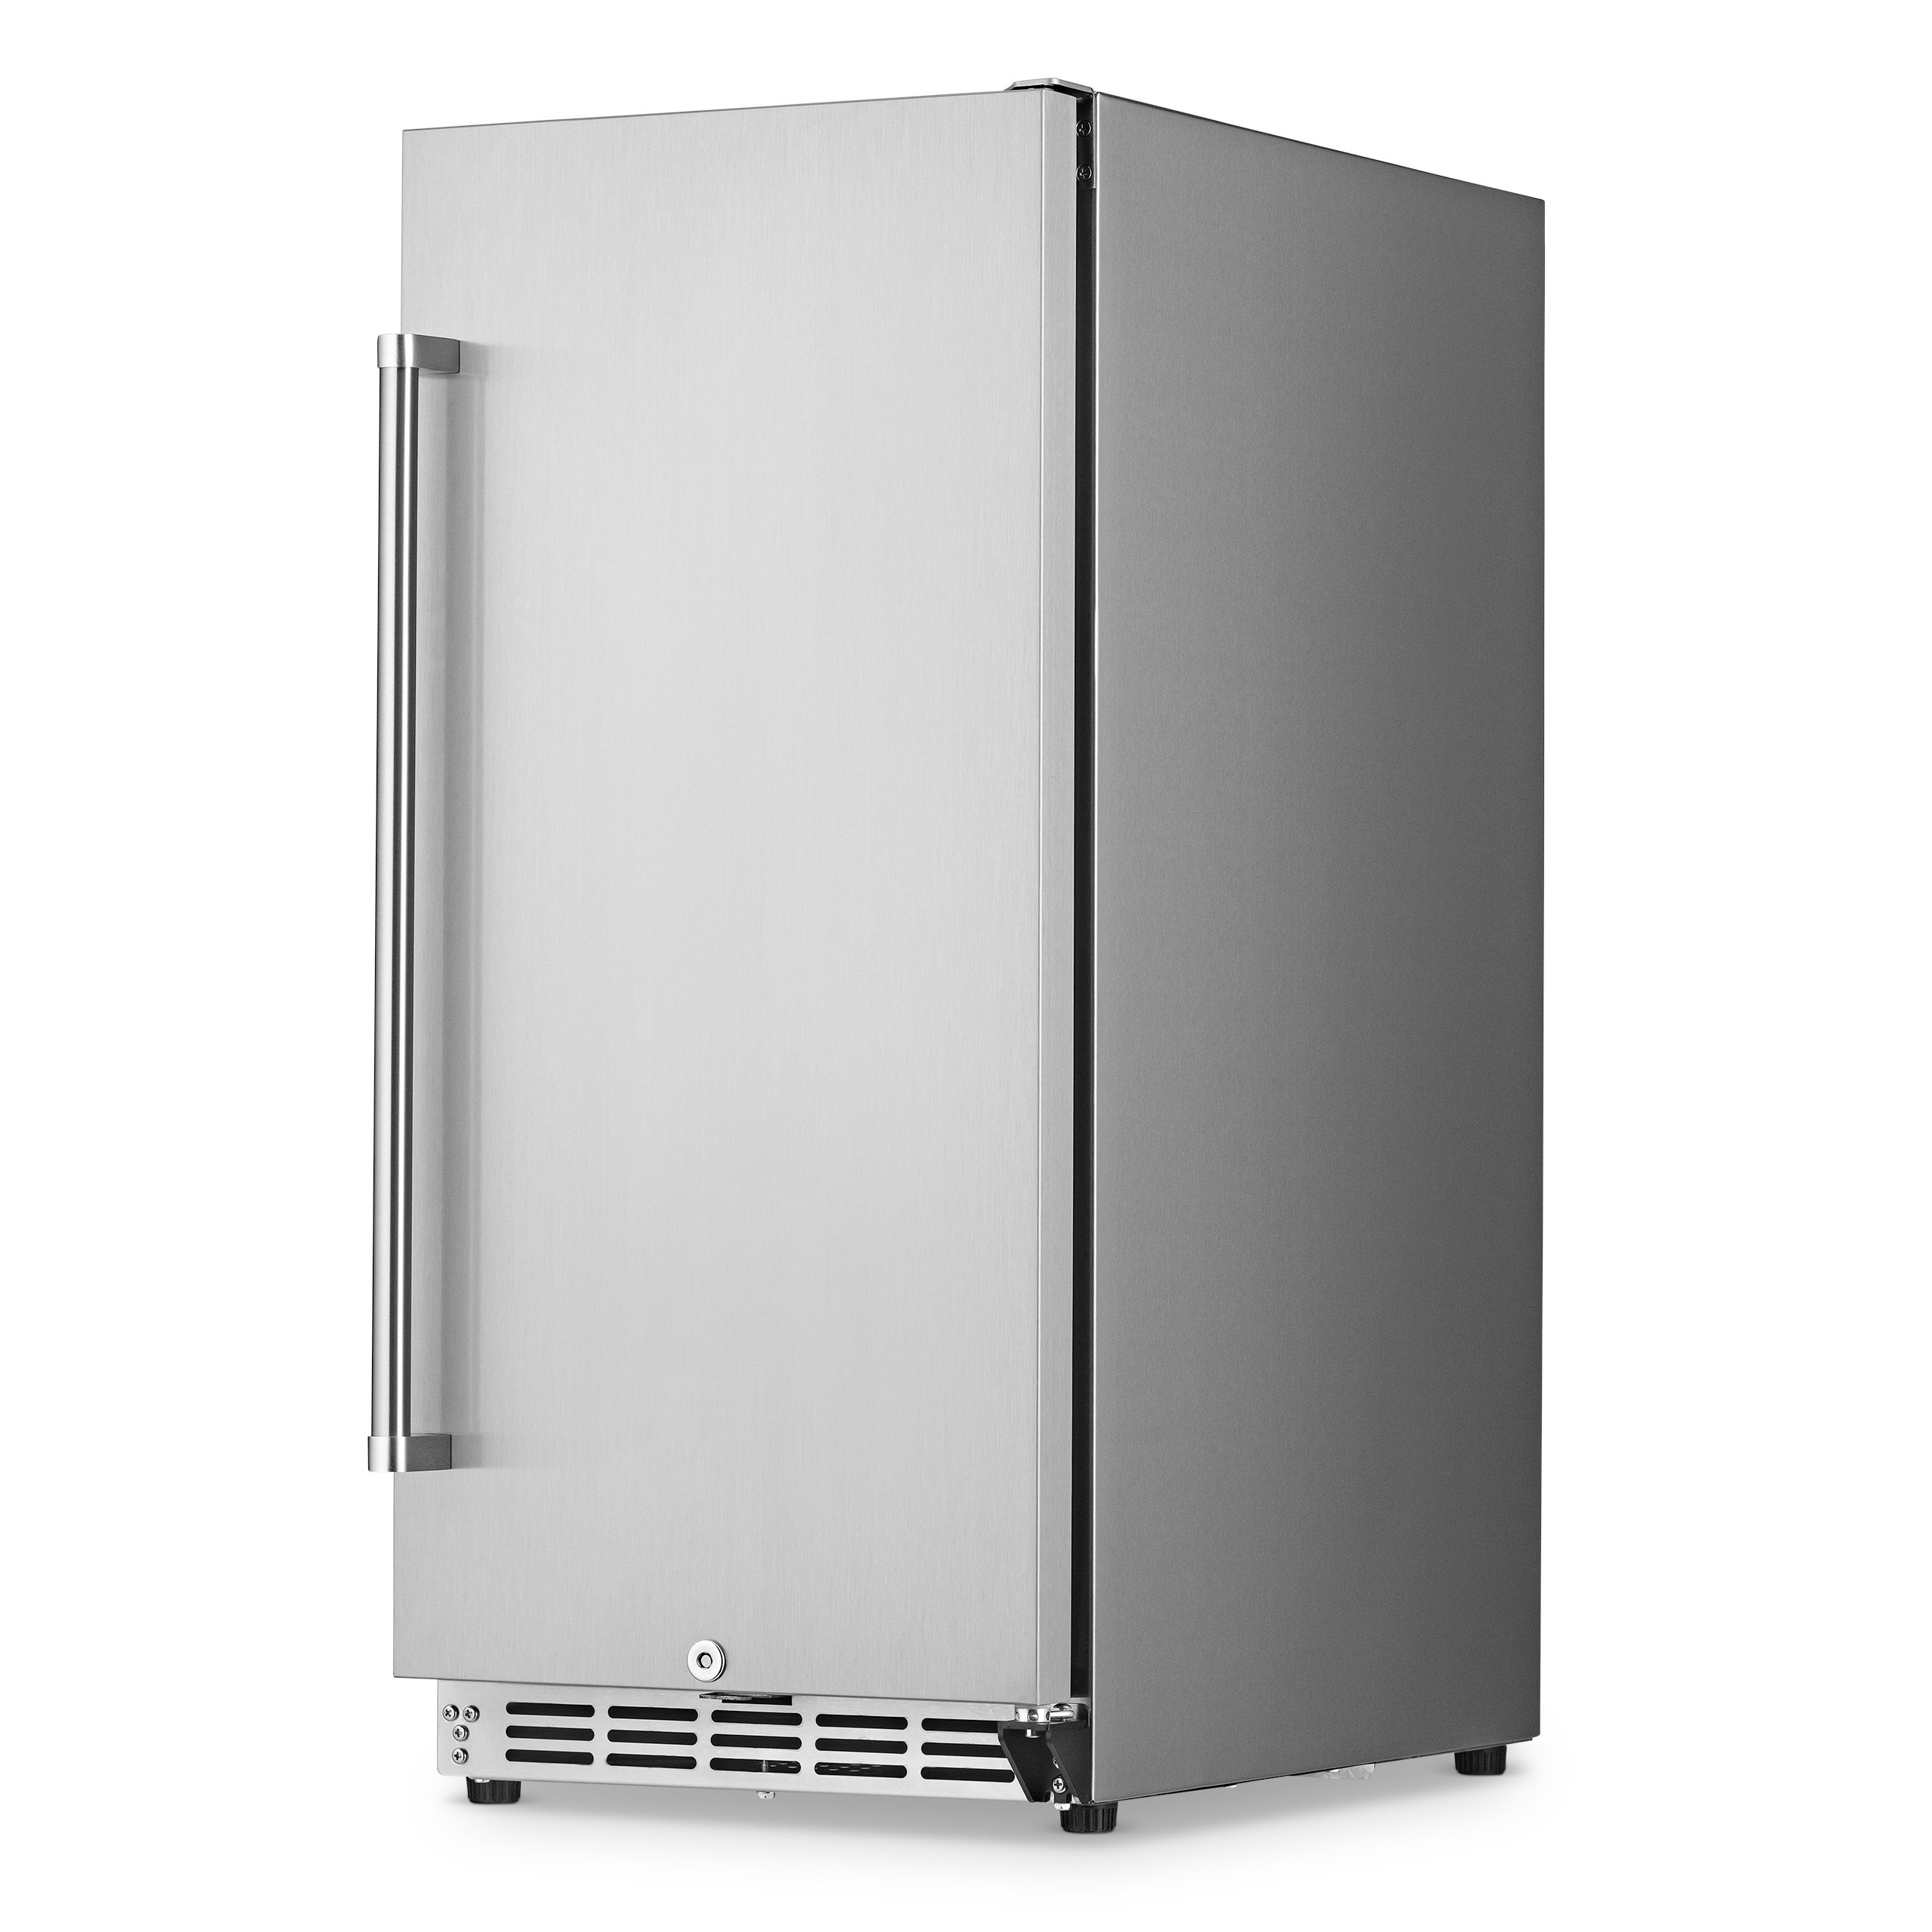 Newair 3.2 Cu. Ft Stainless Steel Built-in Beverage Refrigerator